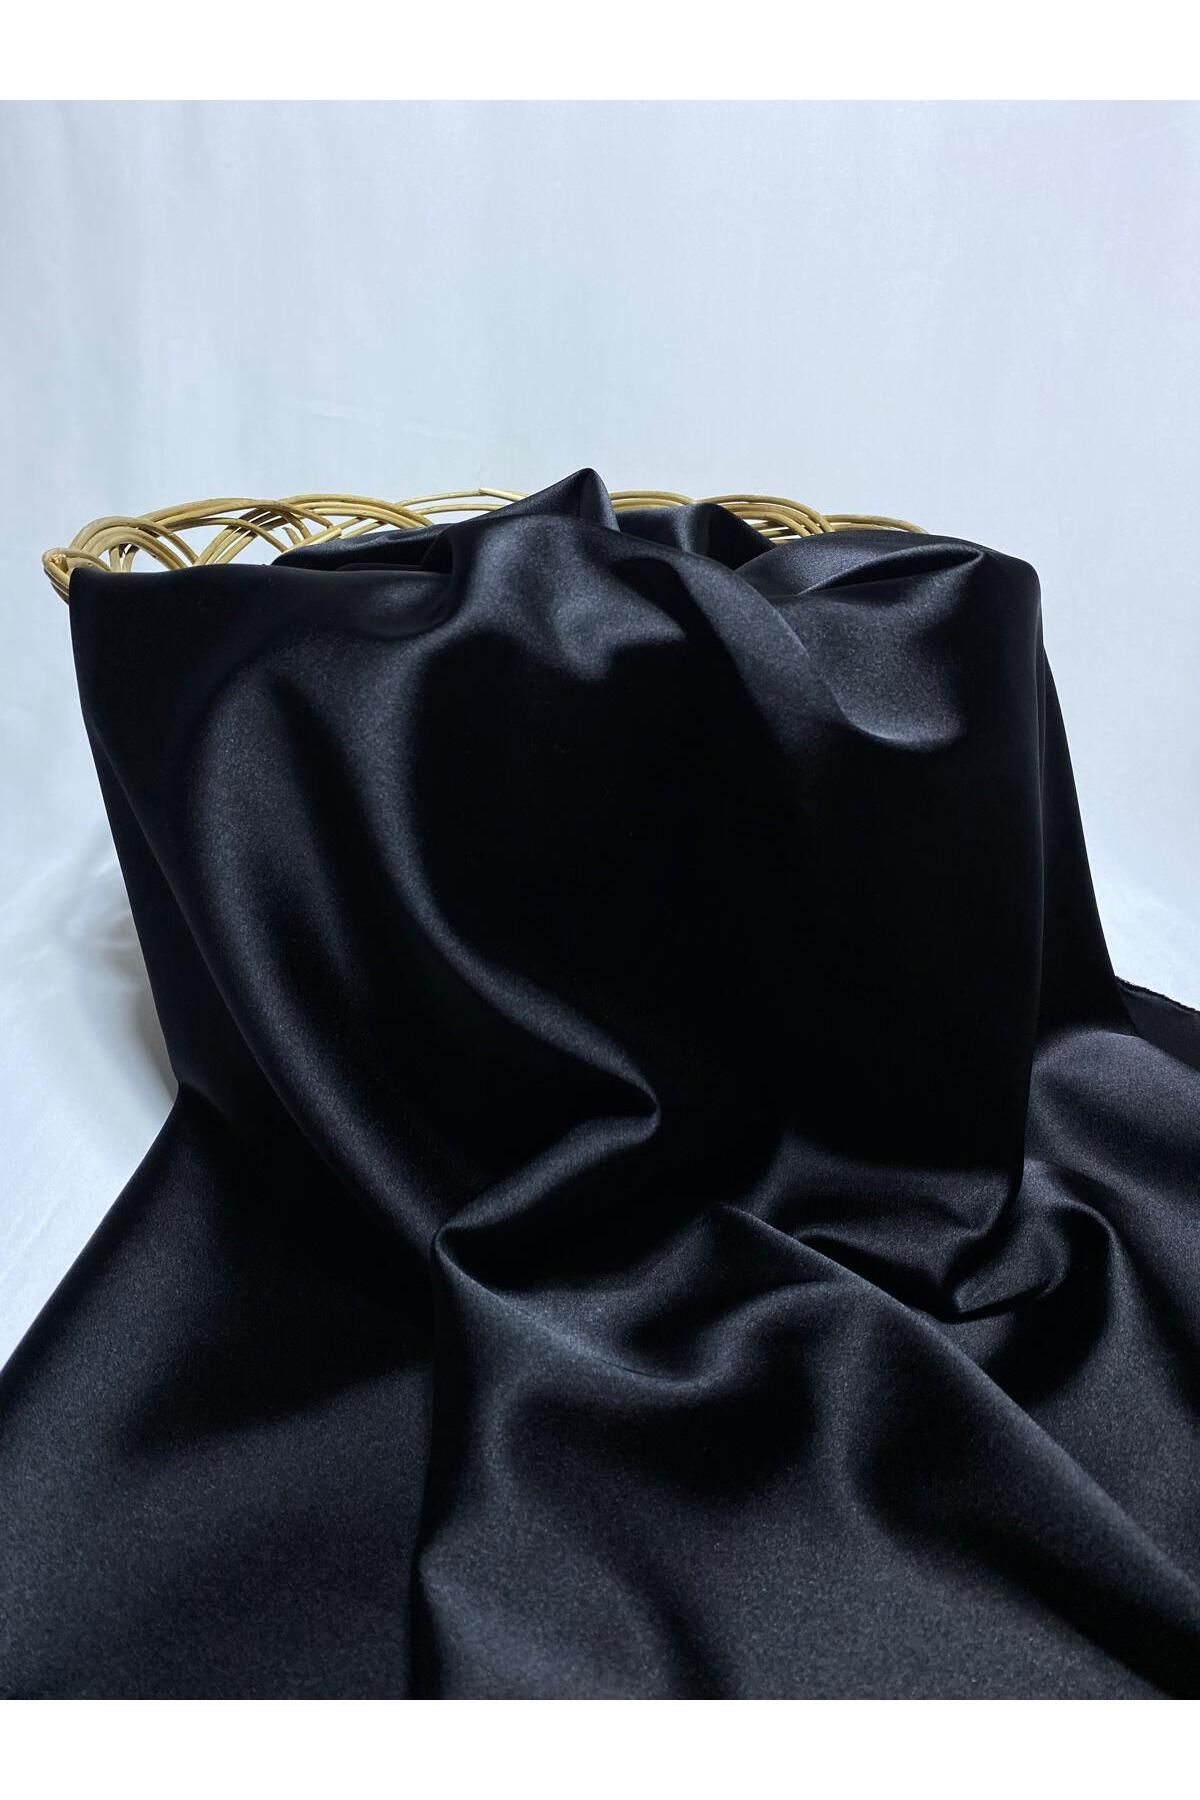 BURSA KUMAŞTAN 150*100 Mevsimlik Siyah Renk Elbiselik Saten Kumaş